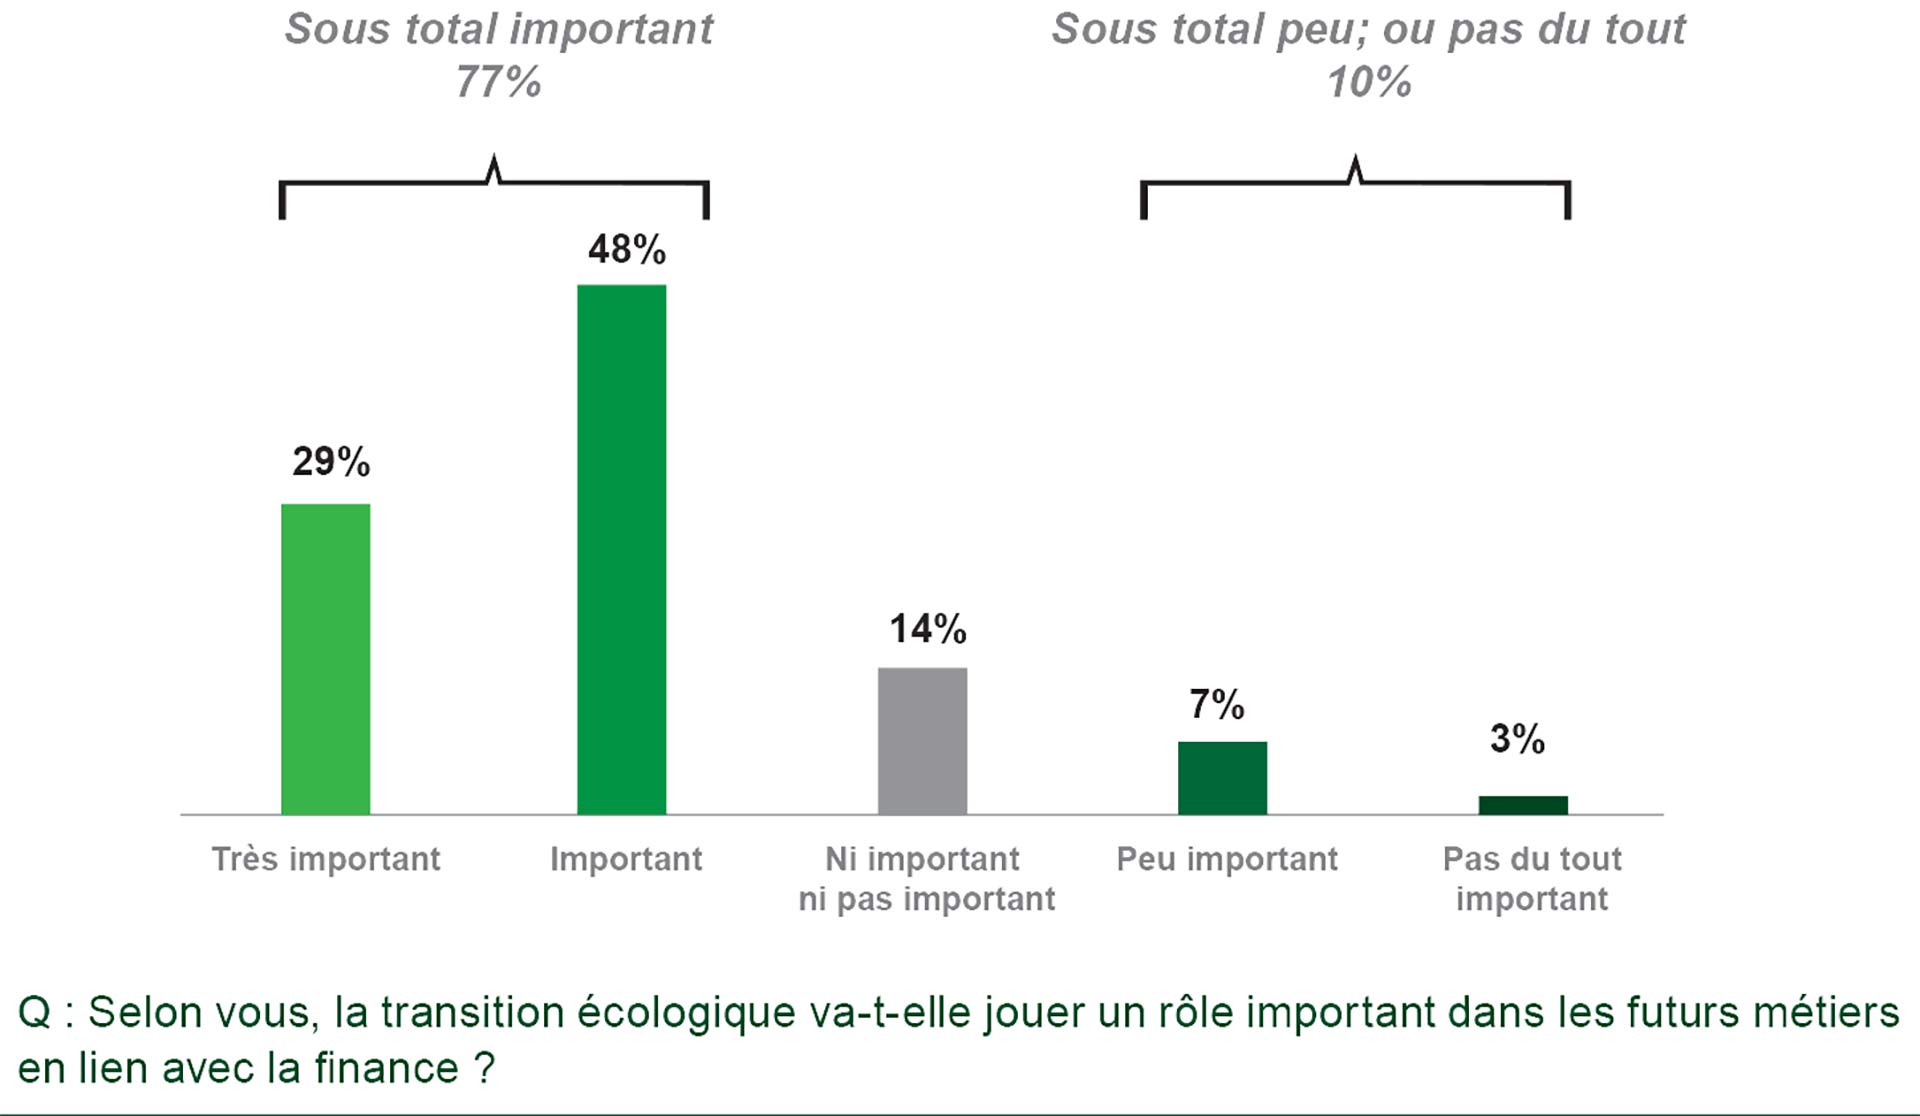 Plus de 3/4 des étudiants considèrent que la transition écologique jouera un rôle important dans les futurs métiers de la finance.